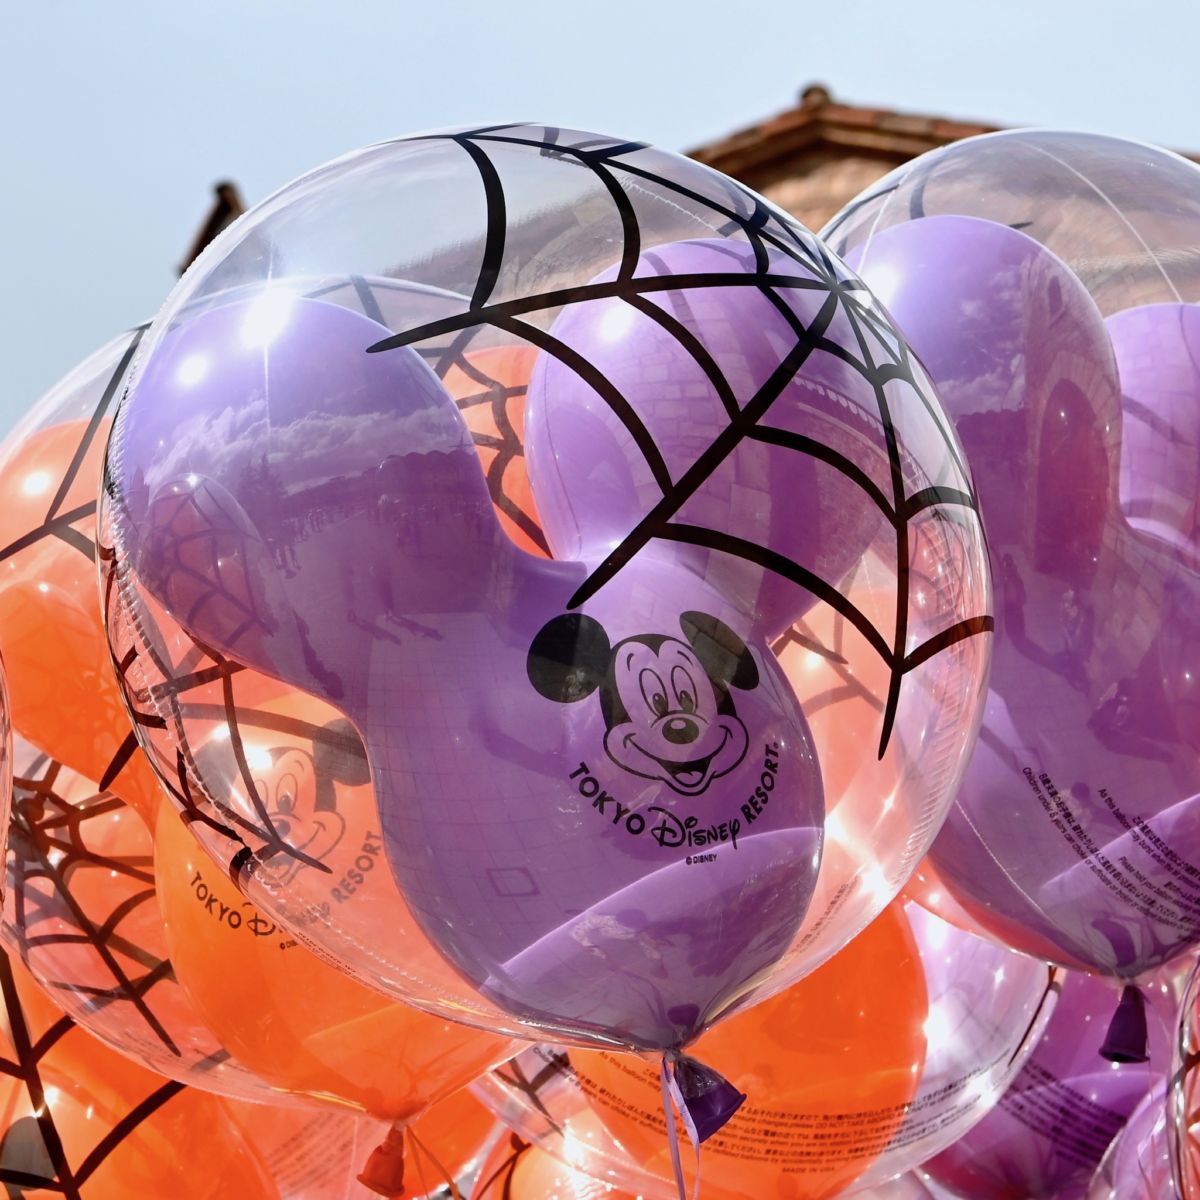 蜘蛛の巣がついたオレンジと紫 東京ディズニーランド ハロウィーン ミッキーバルーン